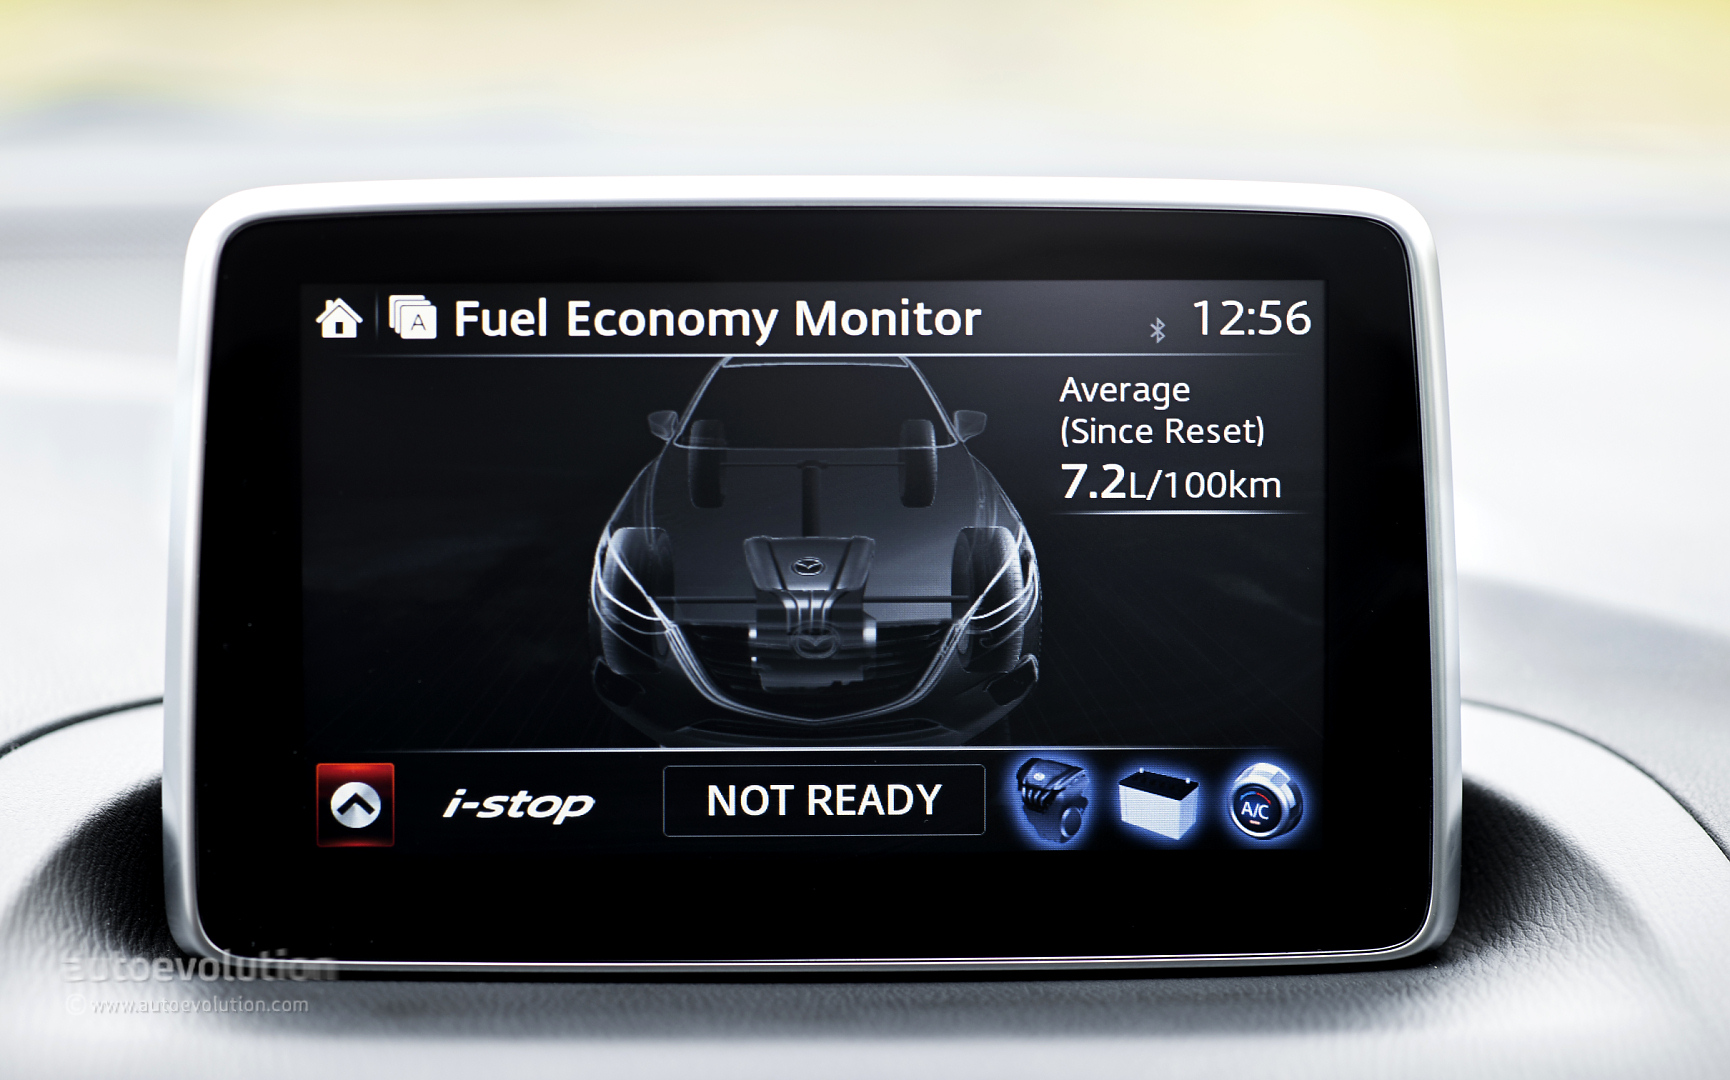 Ford fuel economy monitor fuel economy monitor